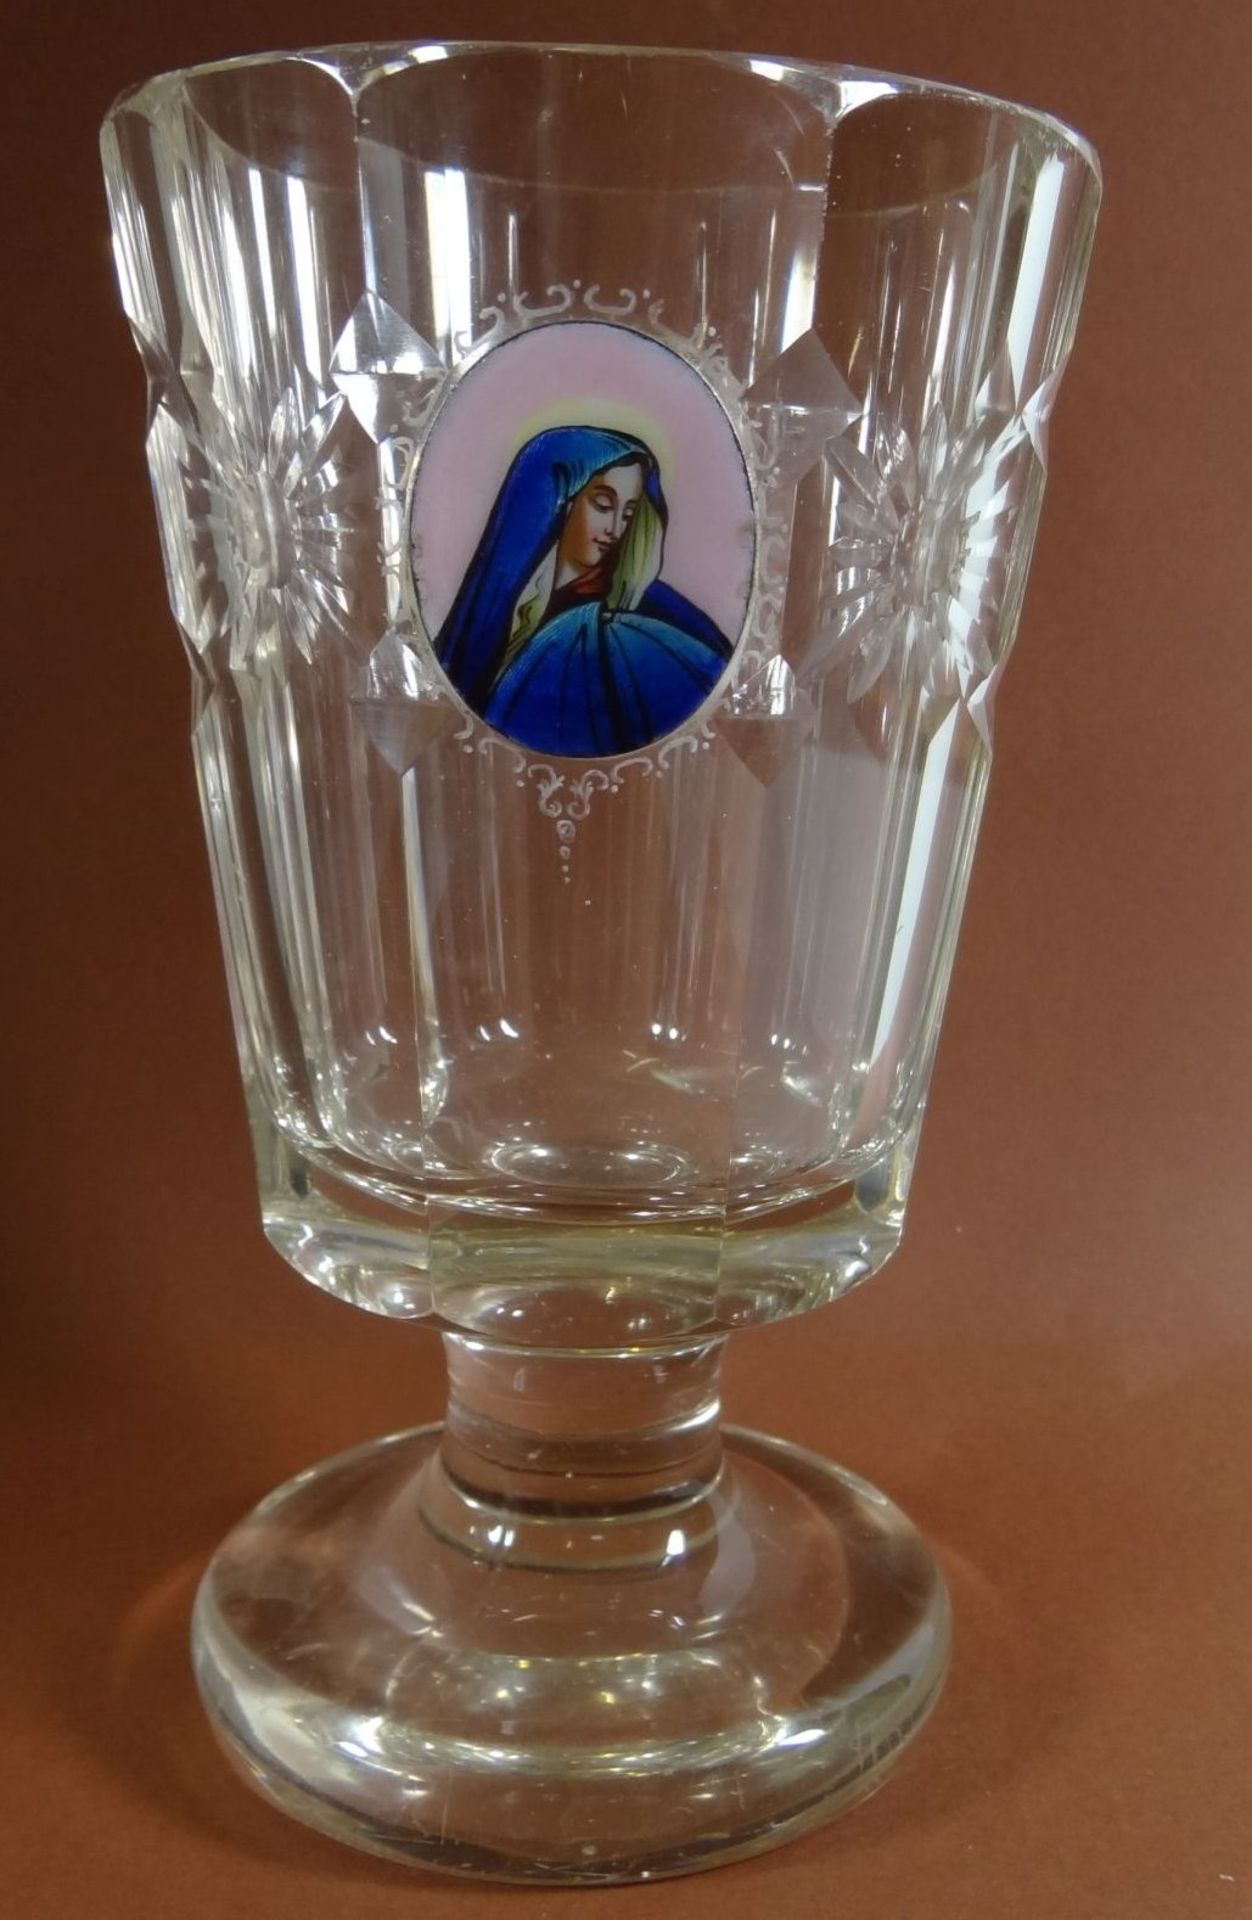 Pokalglas mit Mutter Gottes in Medaillon, beschliffen, rückseitig ungarisch beschriftet, H-16 cm, - Bild 2 aus 9